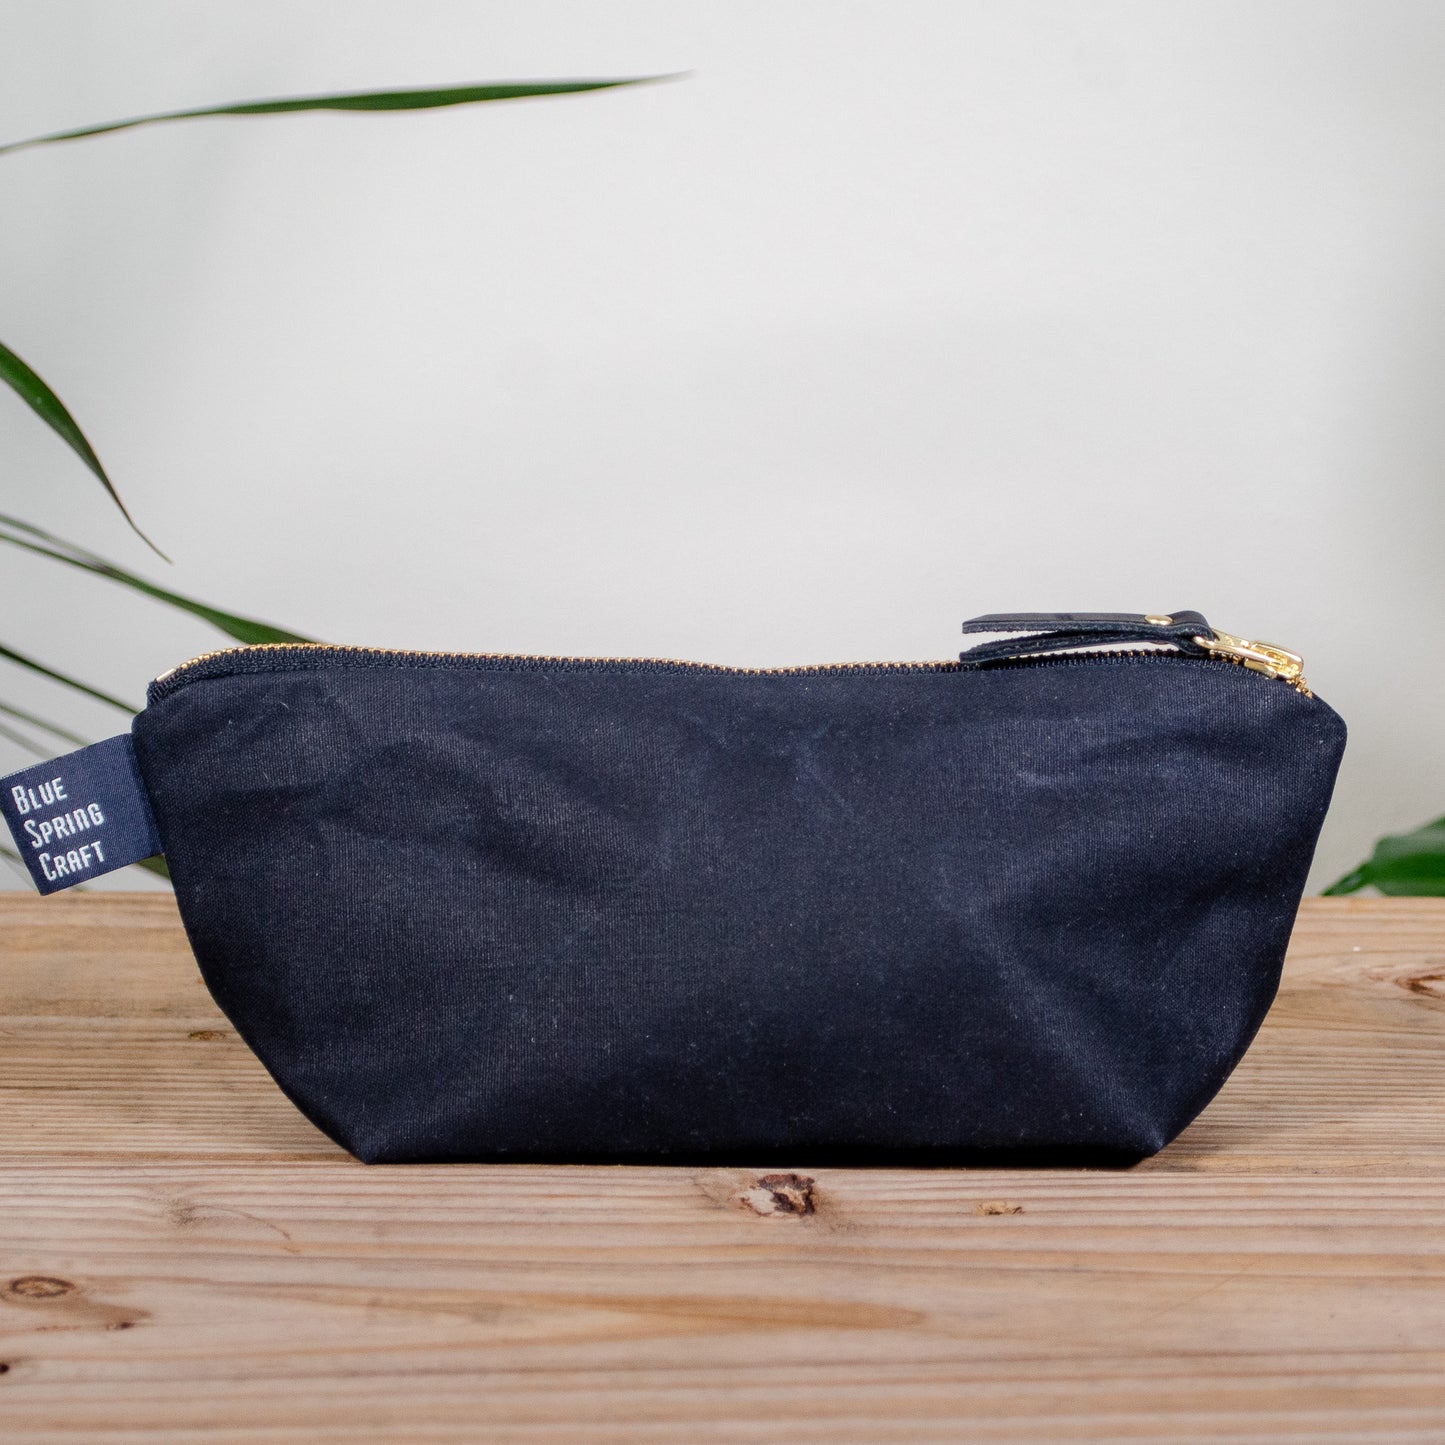 Black Bag No. 1 - The Essentials Bag